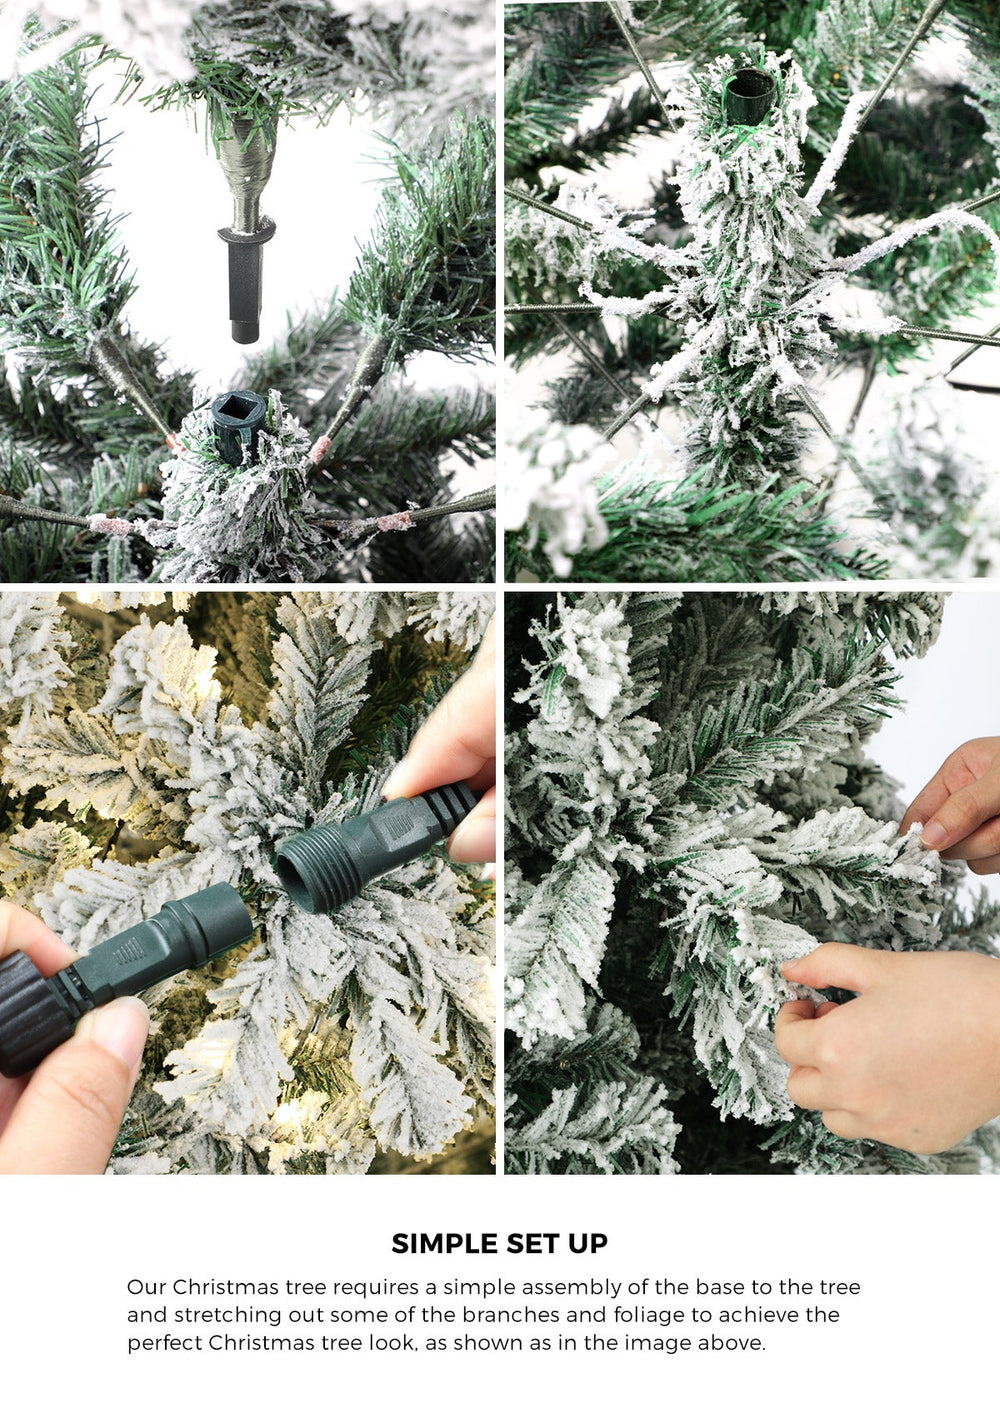 Mazam LED Christmas Tree 1.8M 6FT Xmas Trees White Snow Flocked Decorations